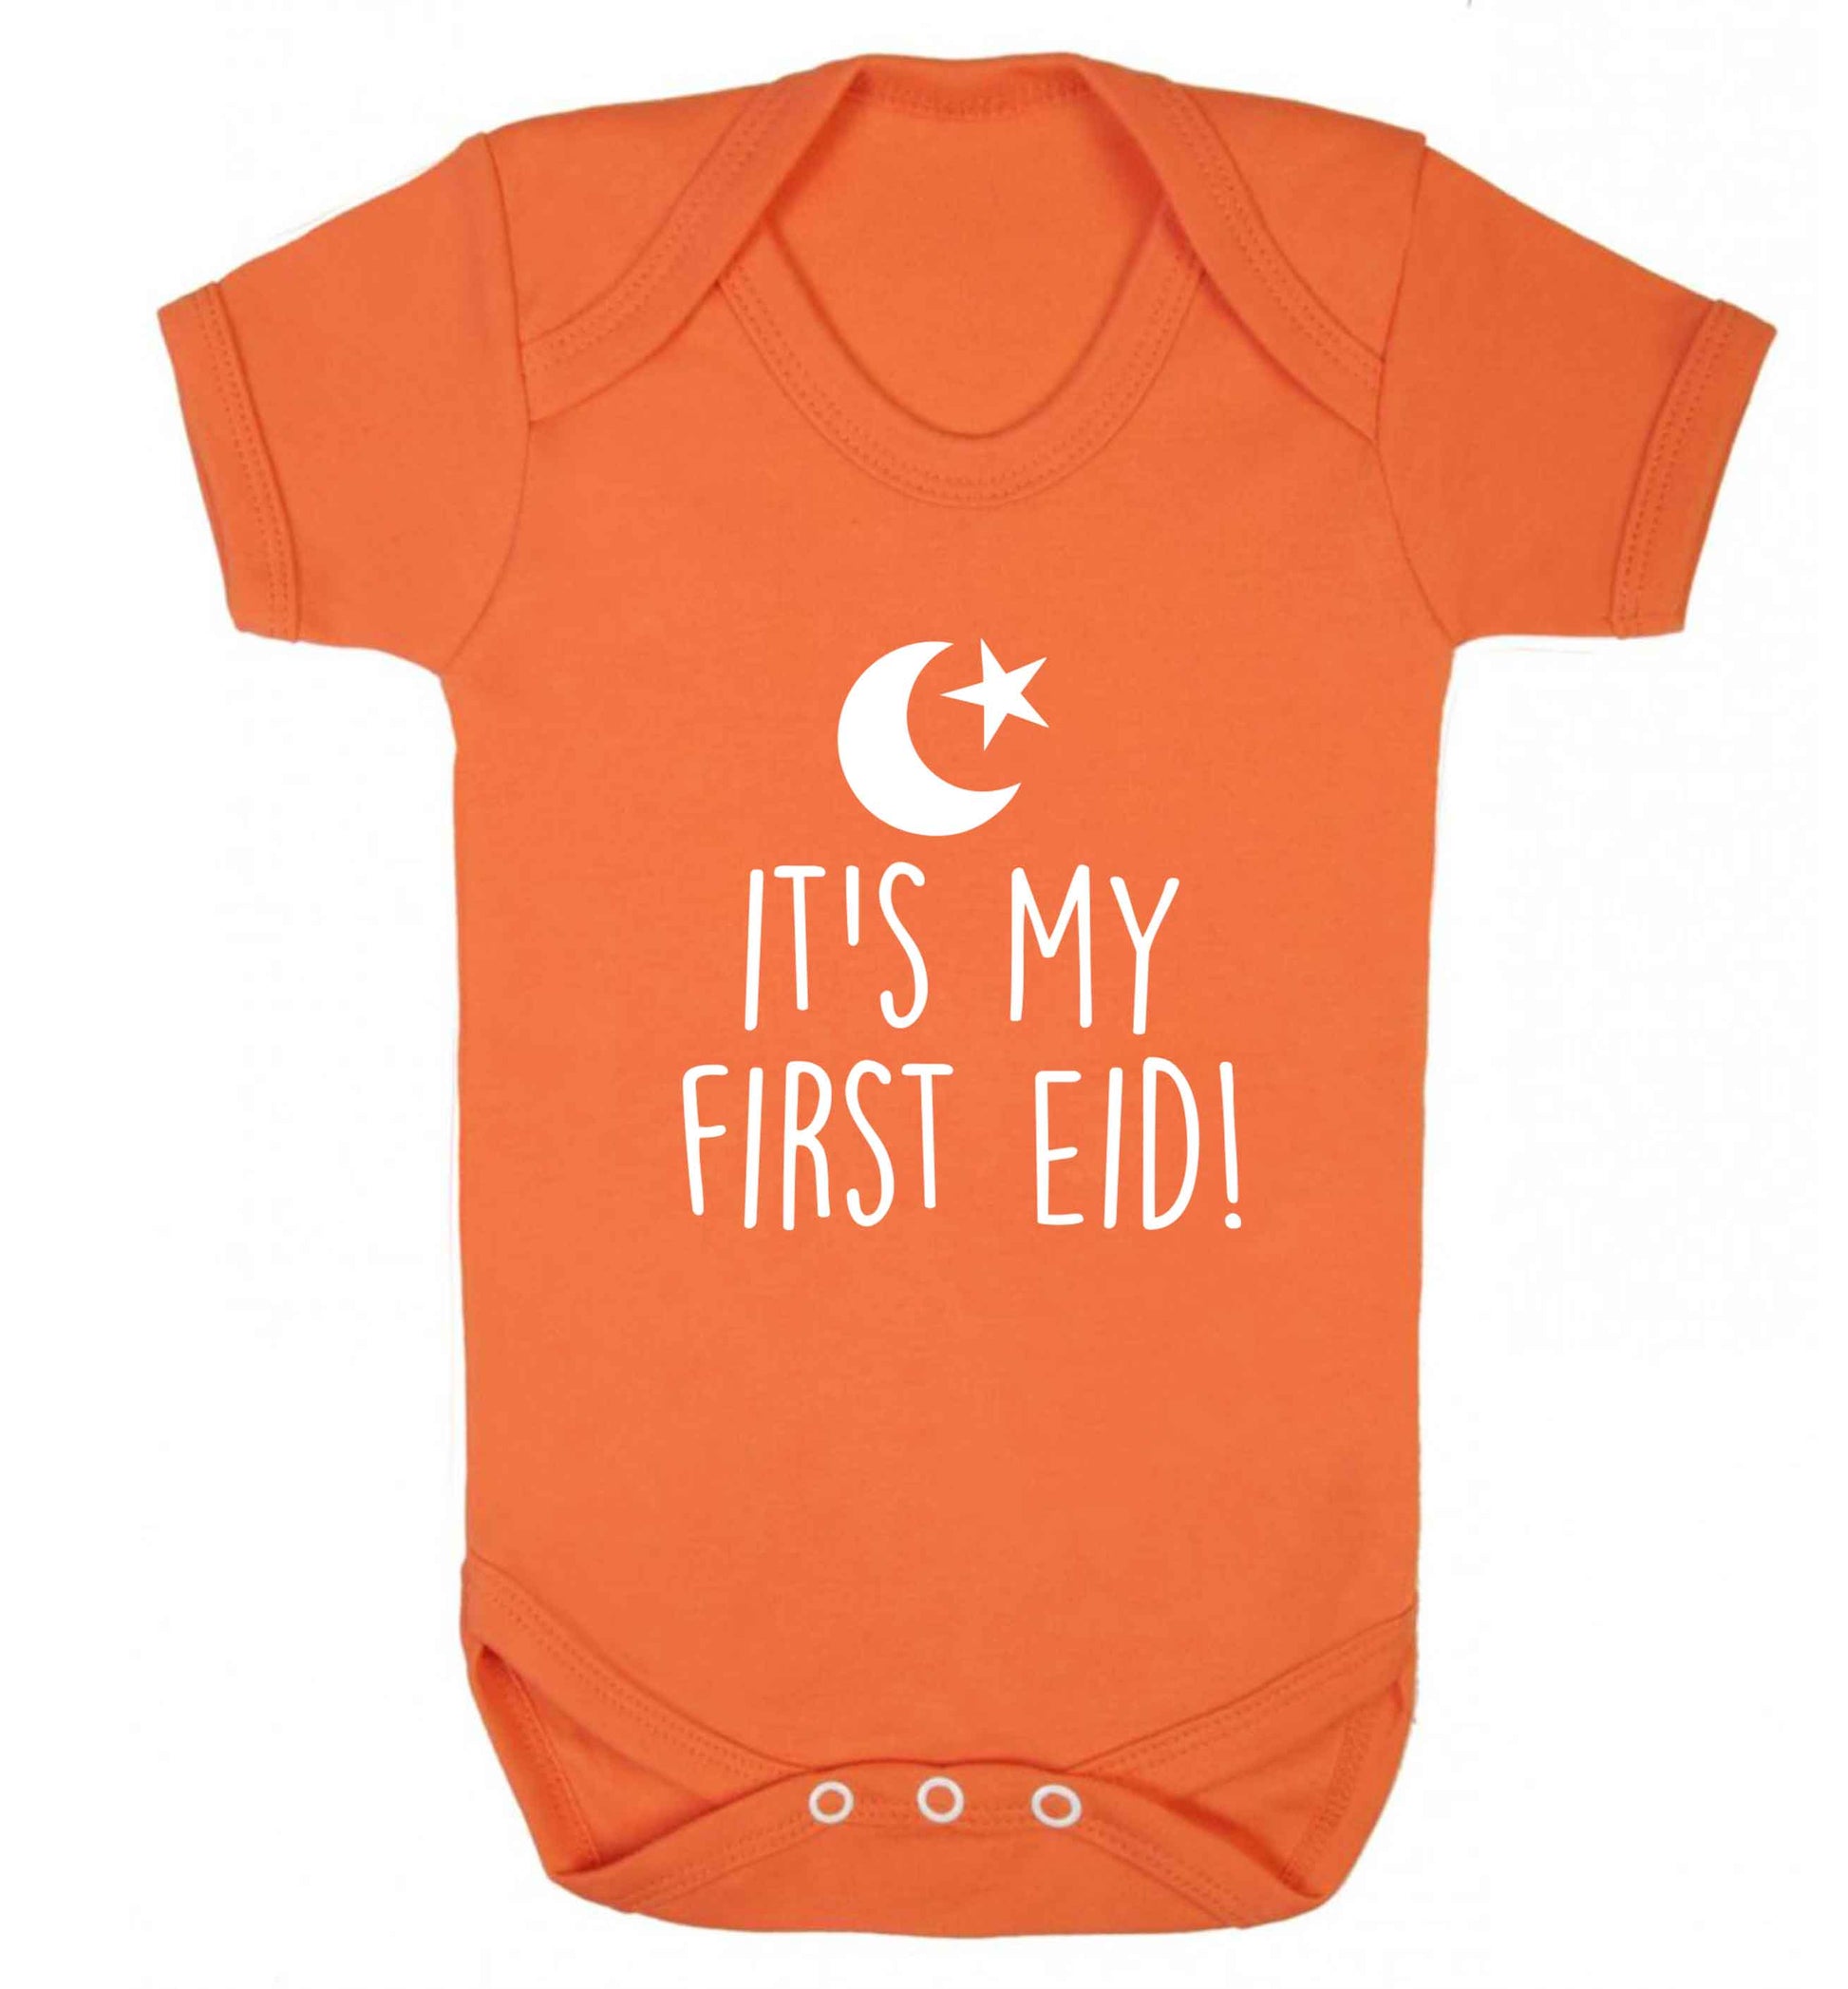 It's my first Eid baby vest orange 18-24 months